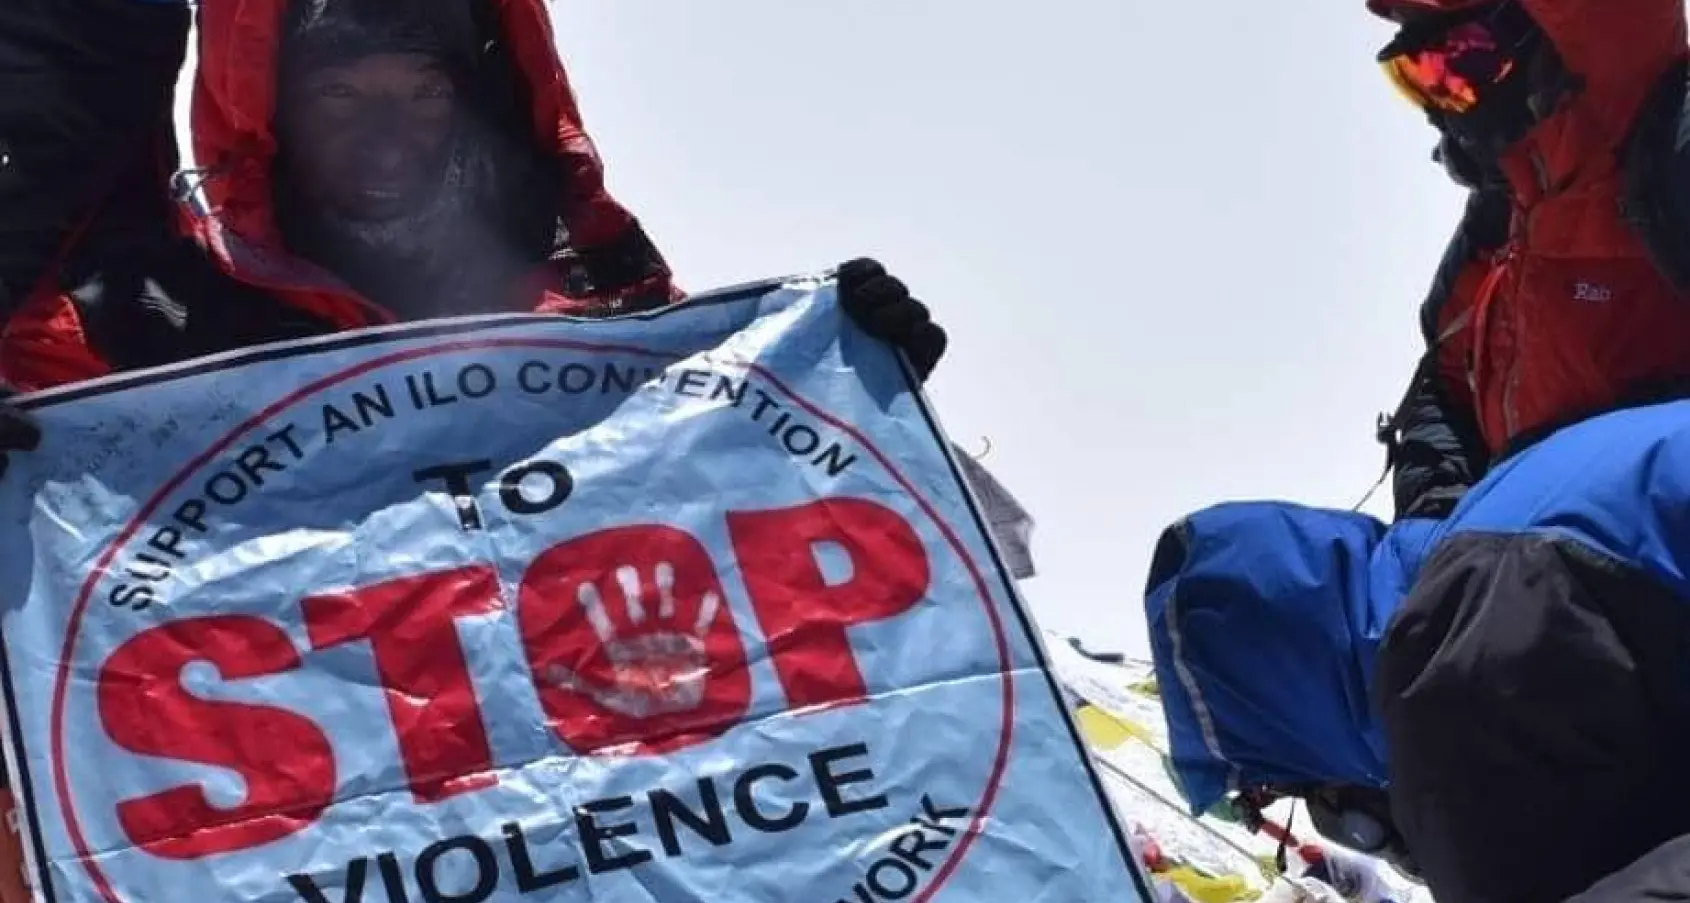 Attivista sindacale scala l'Everest contro le molestie sul lavoro